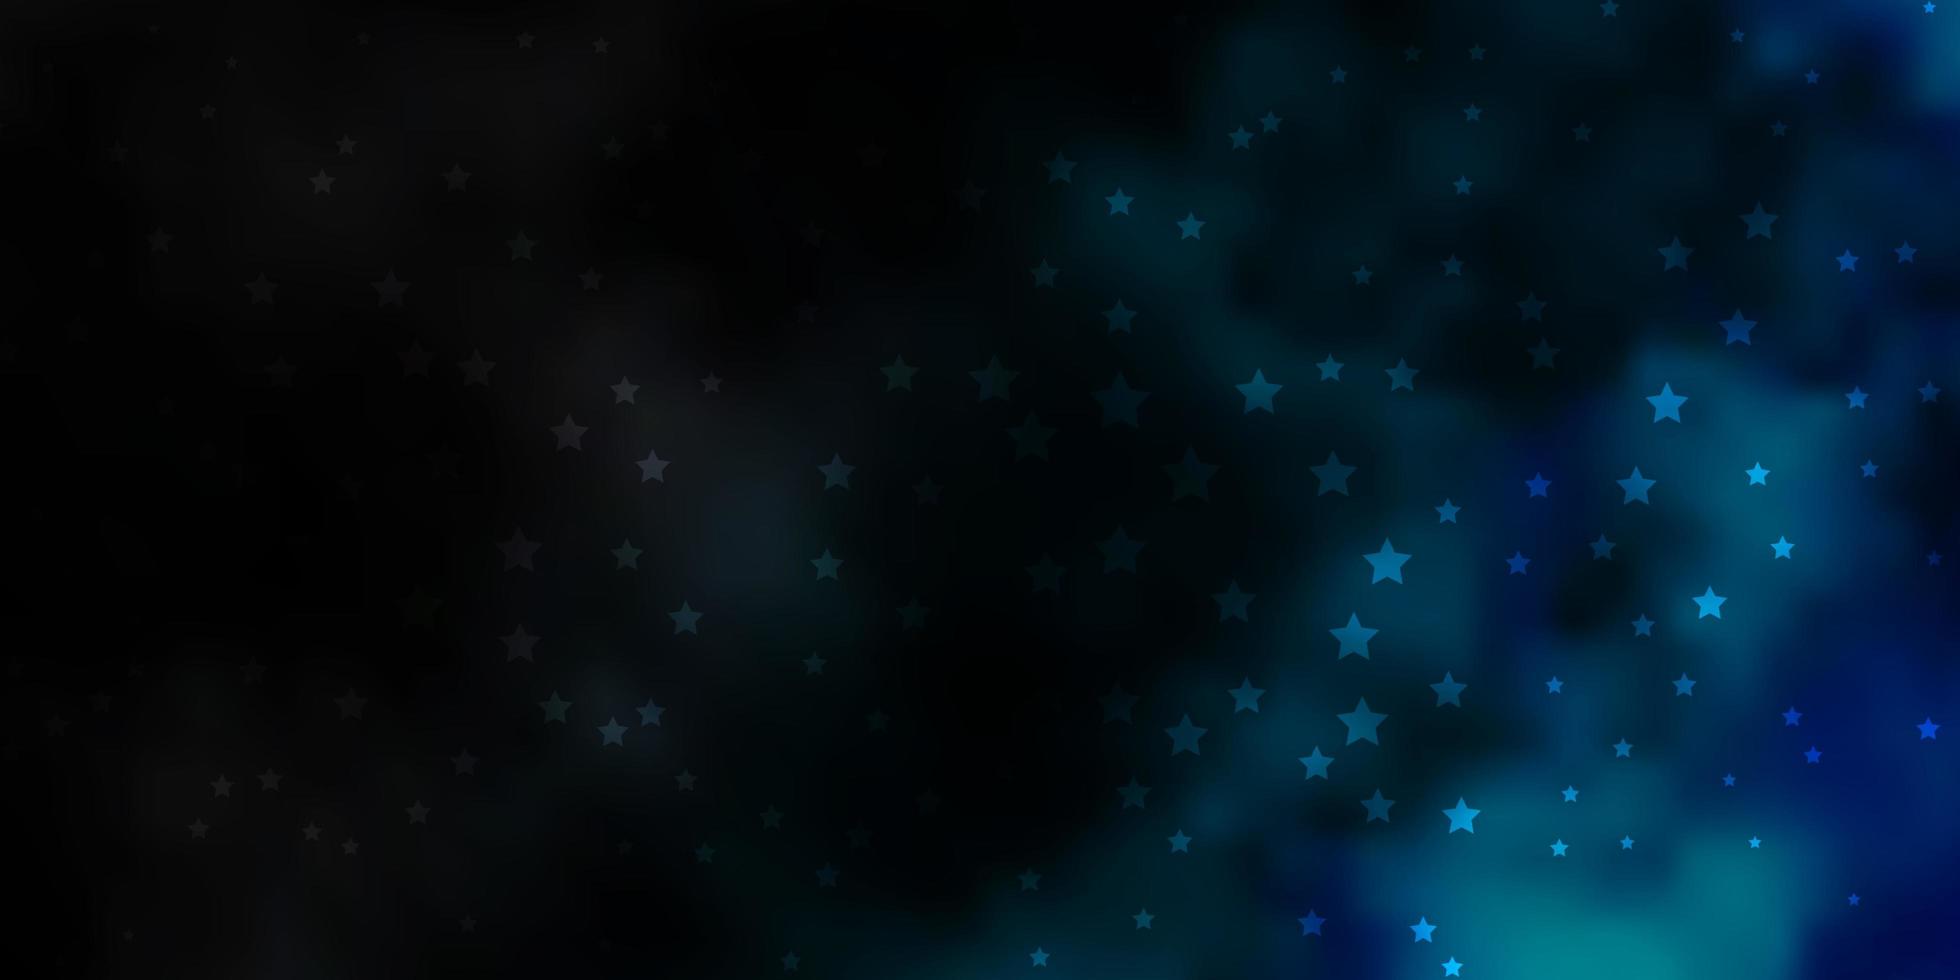 trama vettoriale blu scuro con bellissime stelle